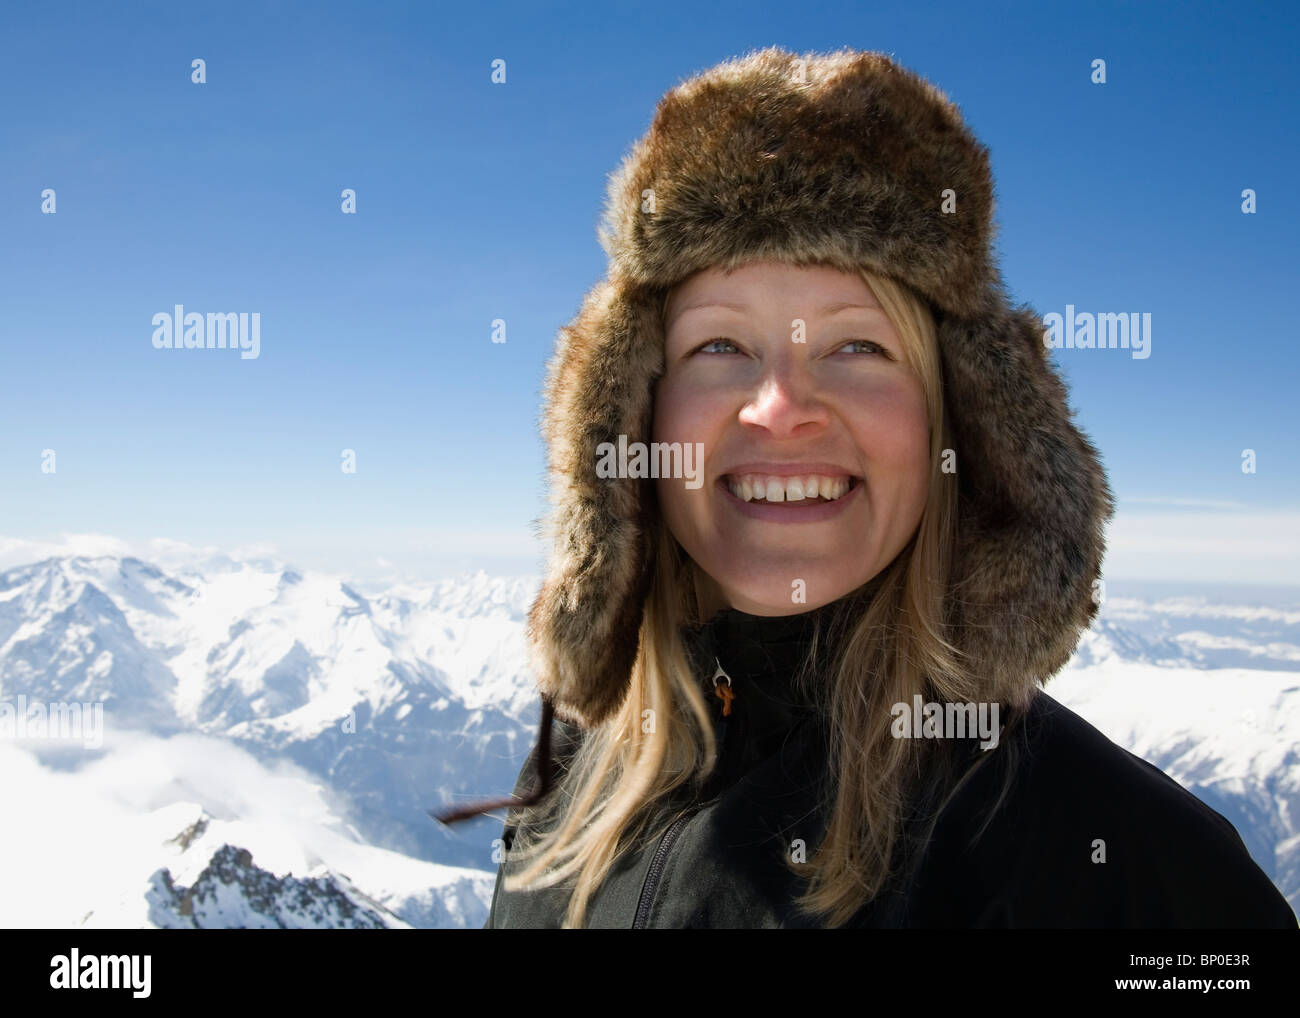 Woman with fur hat en montagne Banque D'Images